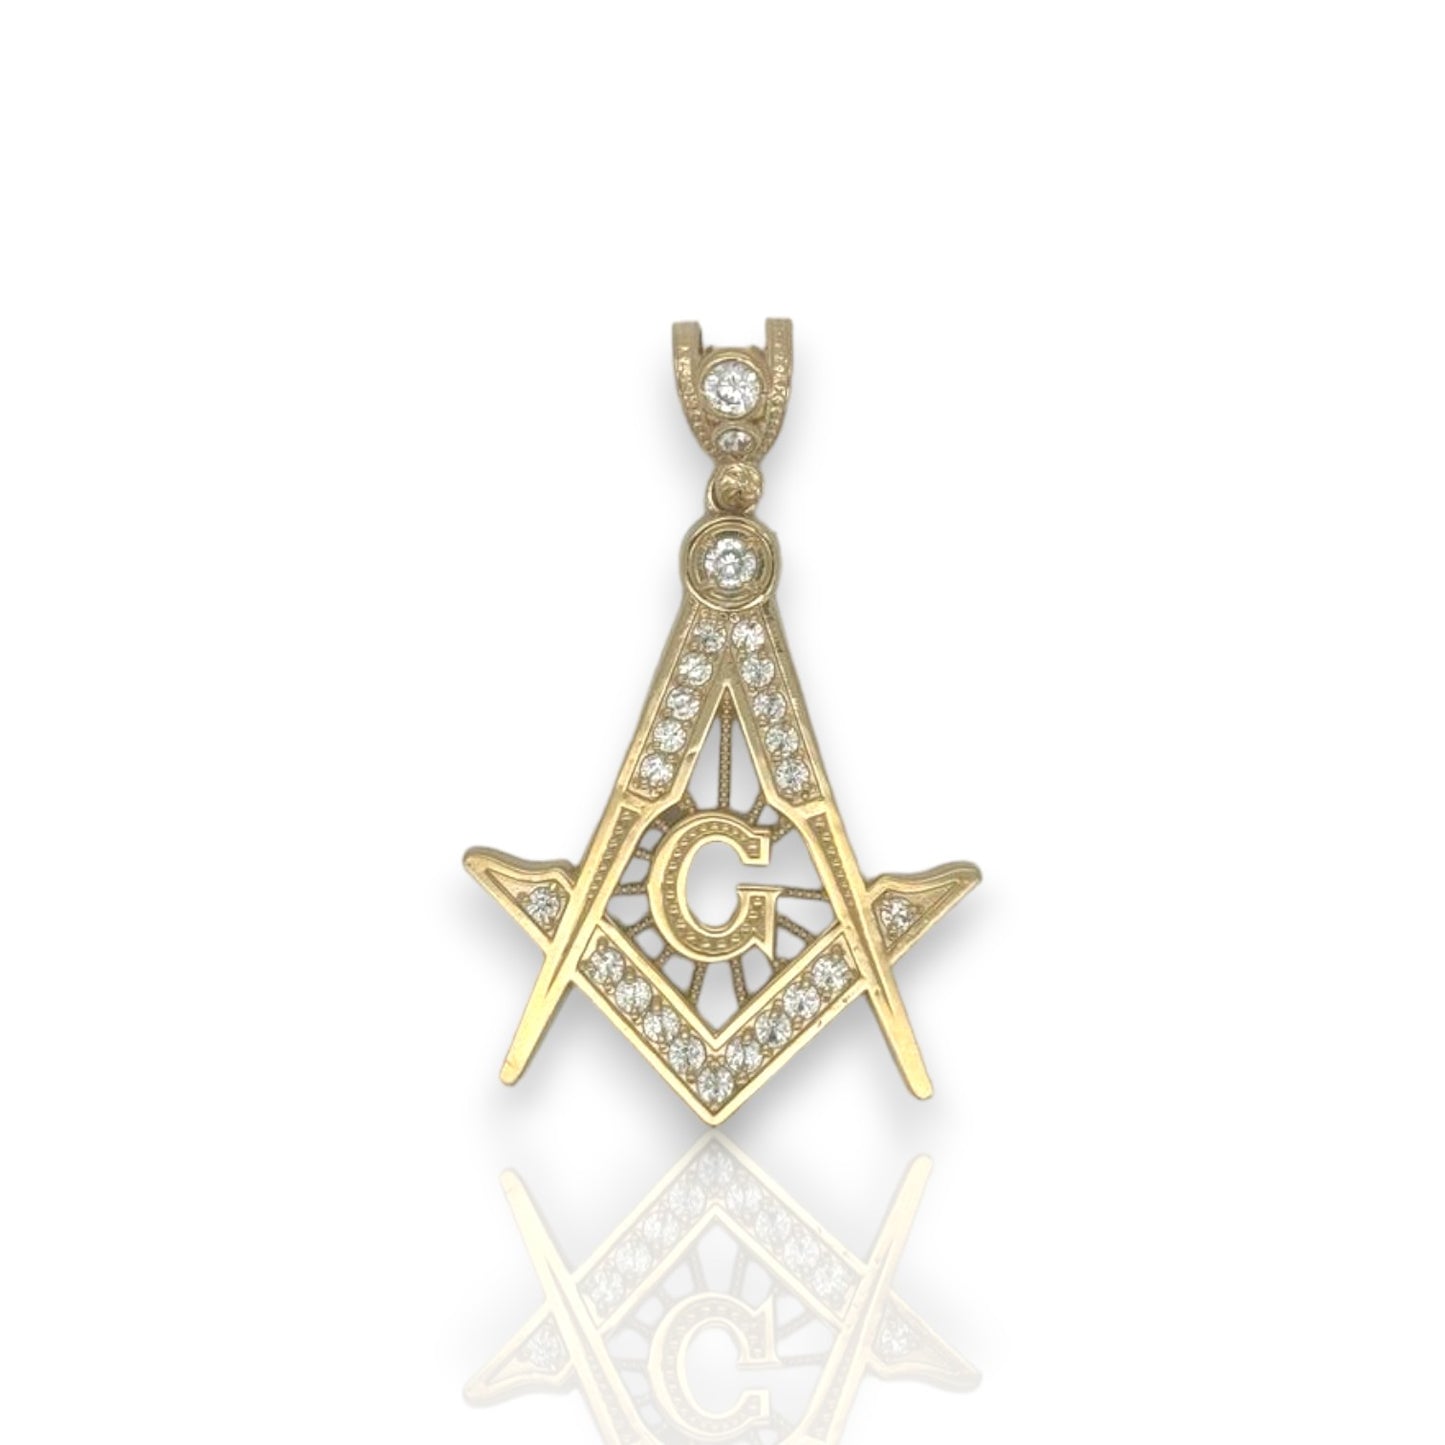 Masonic Symbol "Freemason" Cz Pendant  - 14k Yellow Gold